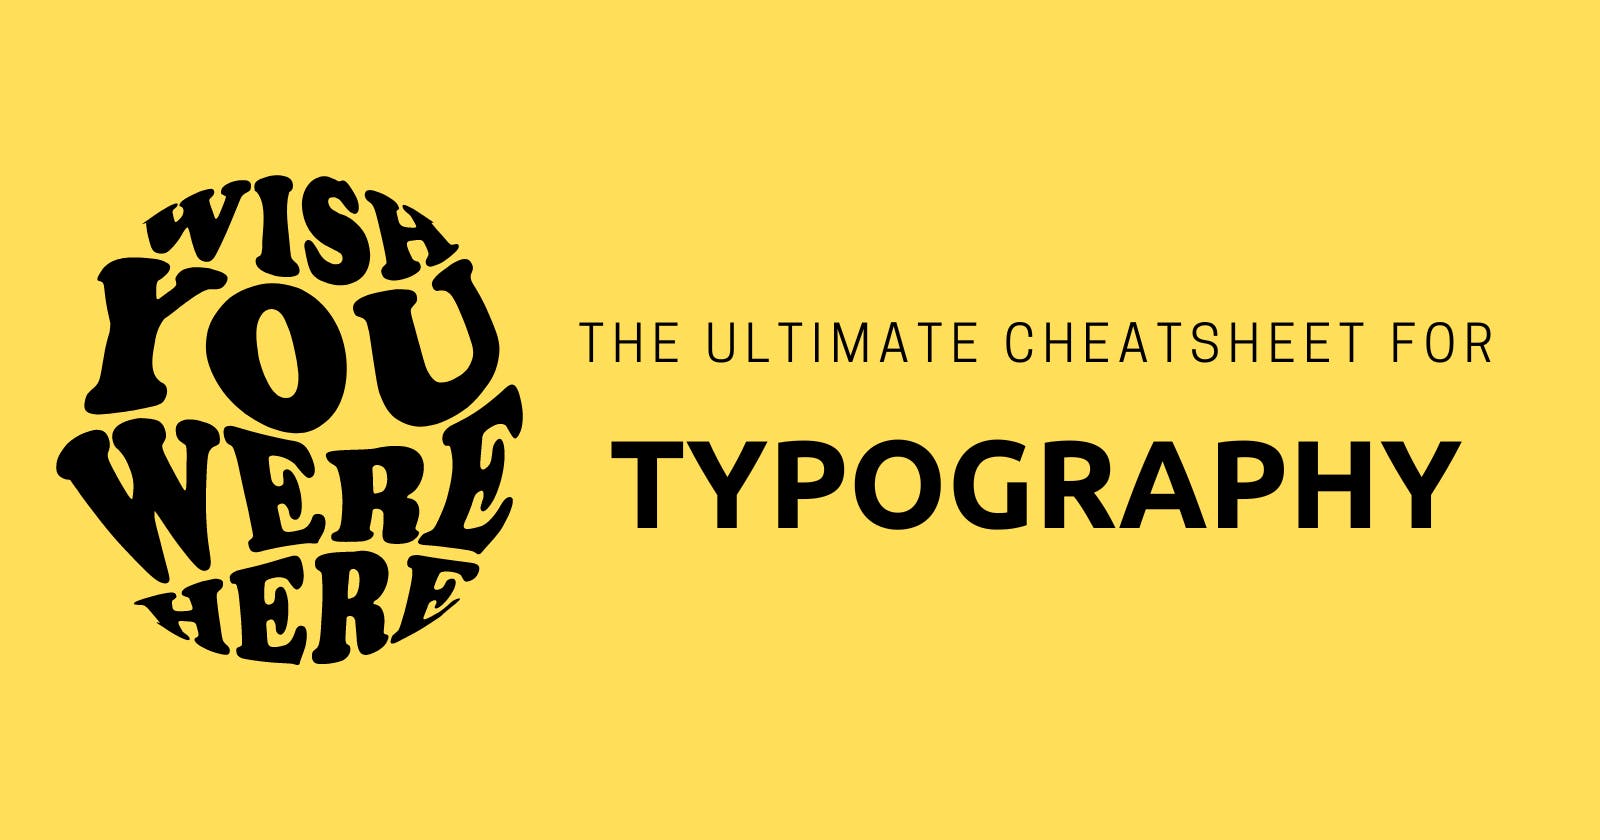 The Ultimate Cheatsheet to Typography! 😎